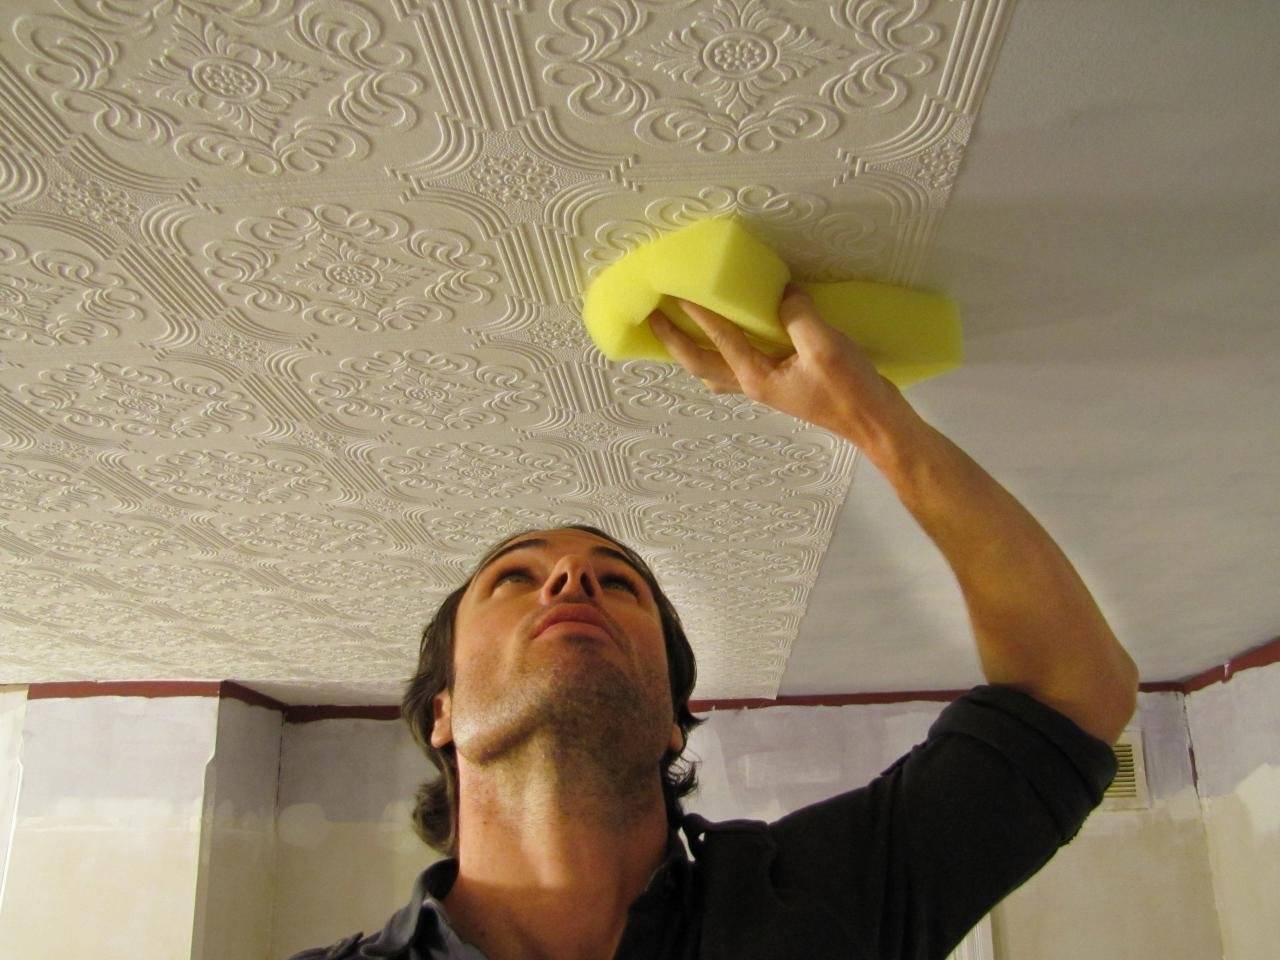 Чем покрасить потолочную плитку из пенопласта - можно ли краской и как